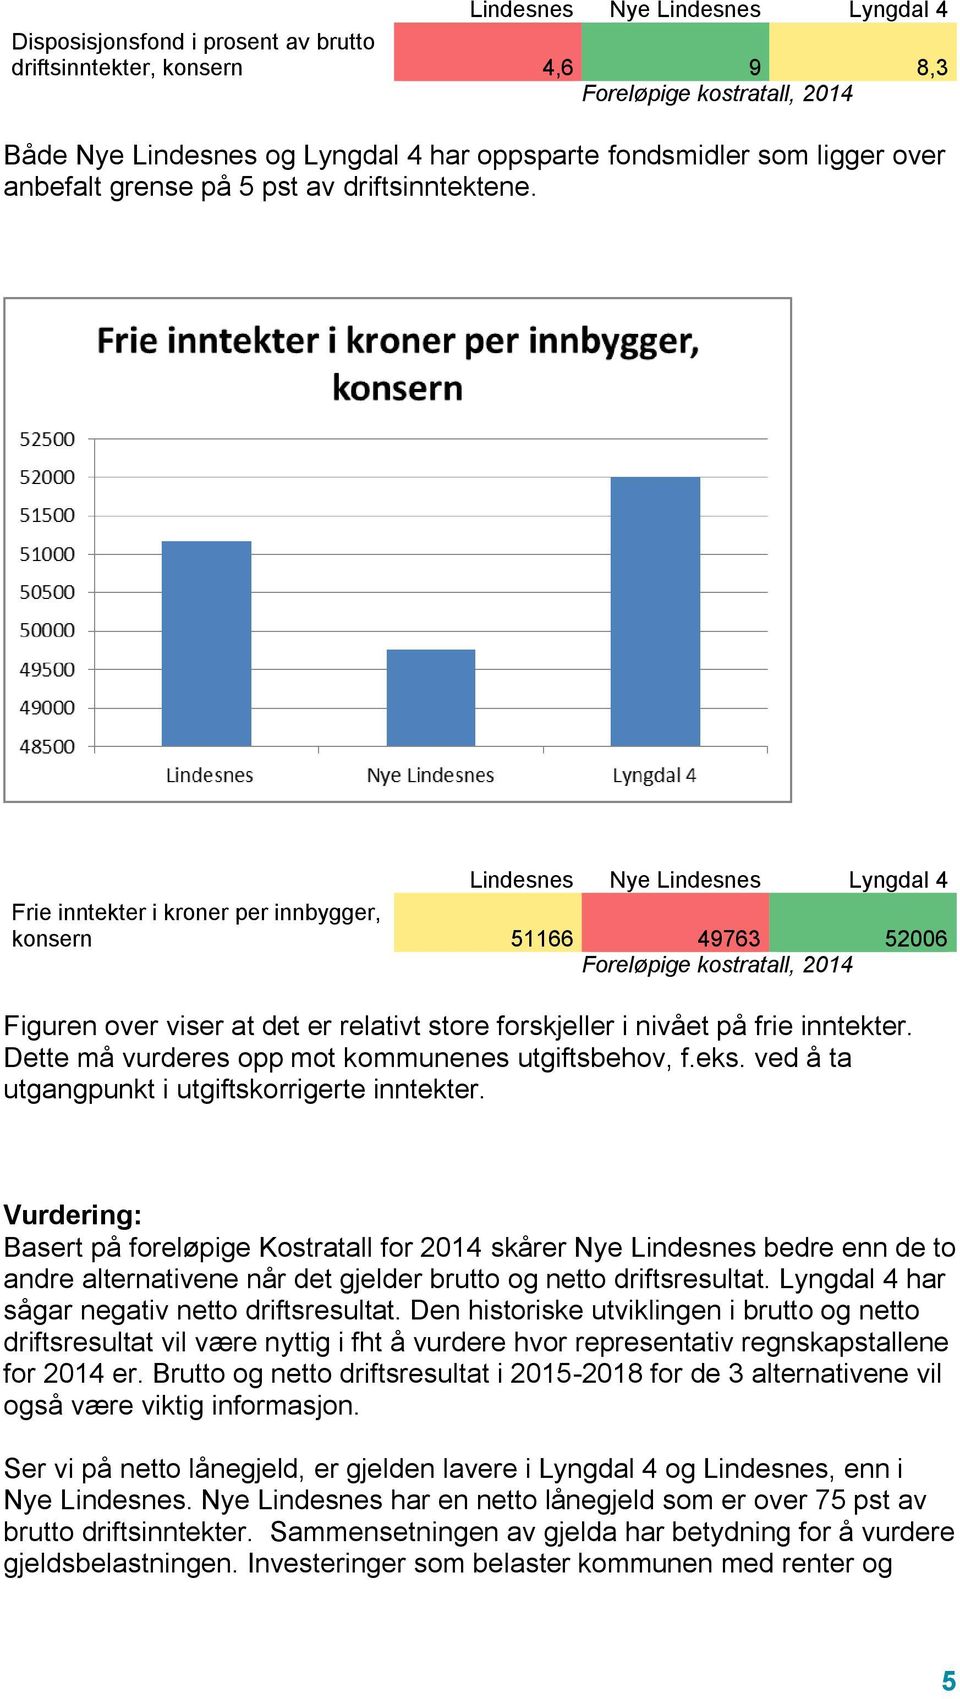 Lindesnes Nye Lindesnes Lyngdal 4 Frie inntekter i kroner per innbygger, konsern 51166 49763 52006 Figuren over viser at det er relativt store forskjeller i nivået på frie inntekter.